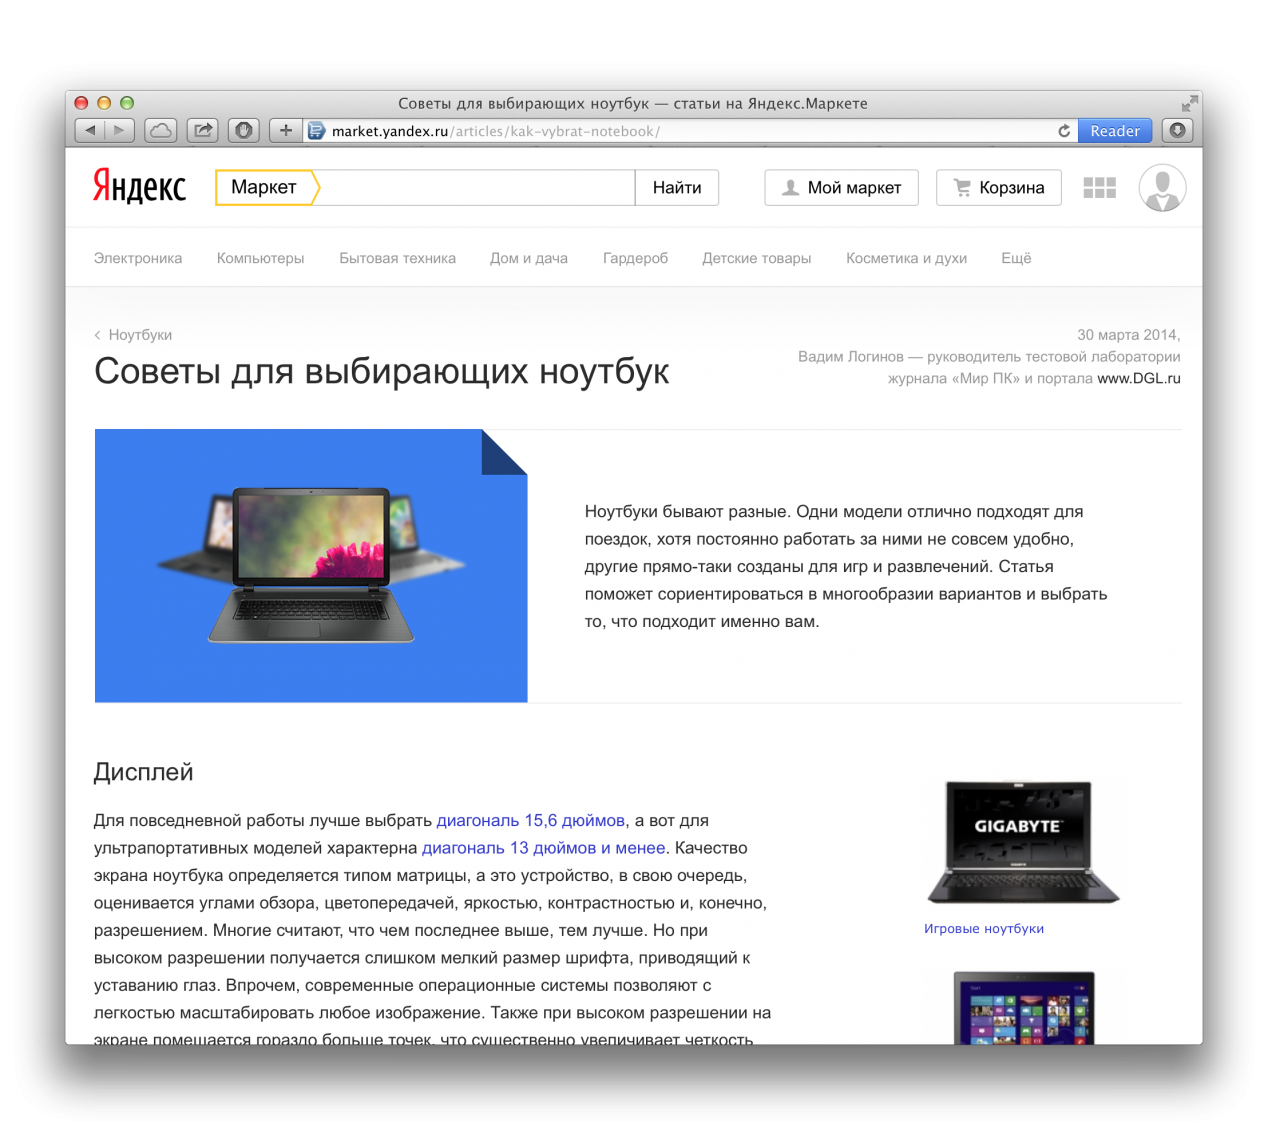 Яндекс.Маркет ждет экспертных статей от Hi-Tech@Mail.ru - 1